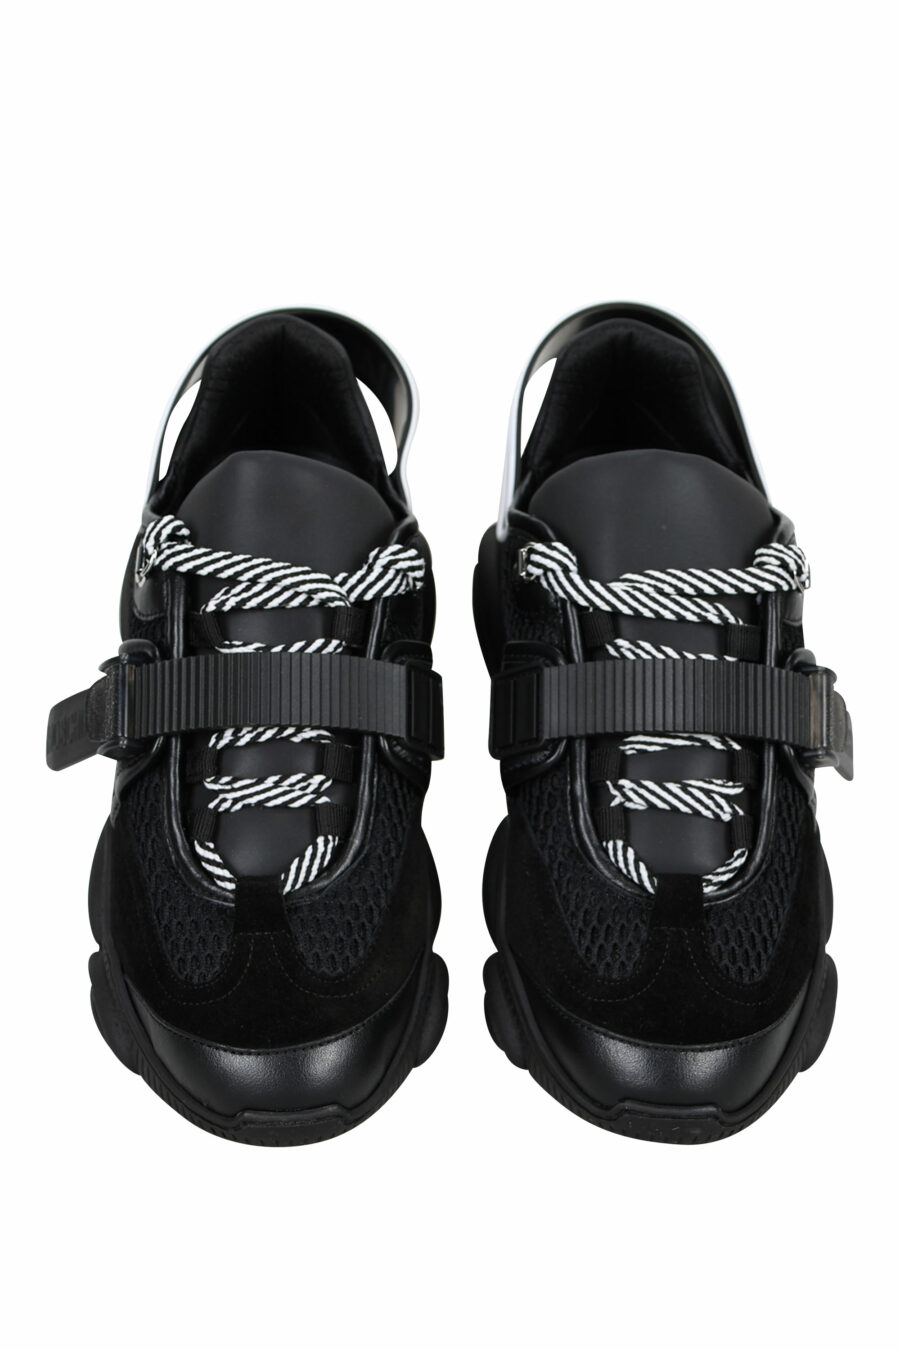 Zapatillas negras con cordones y velcro y logo de goma - 8054653226388 4